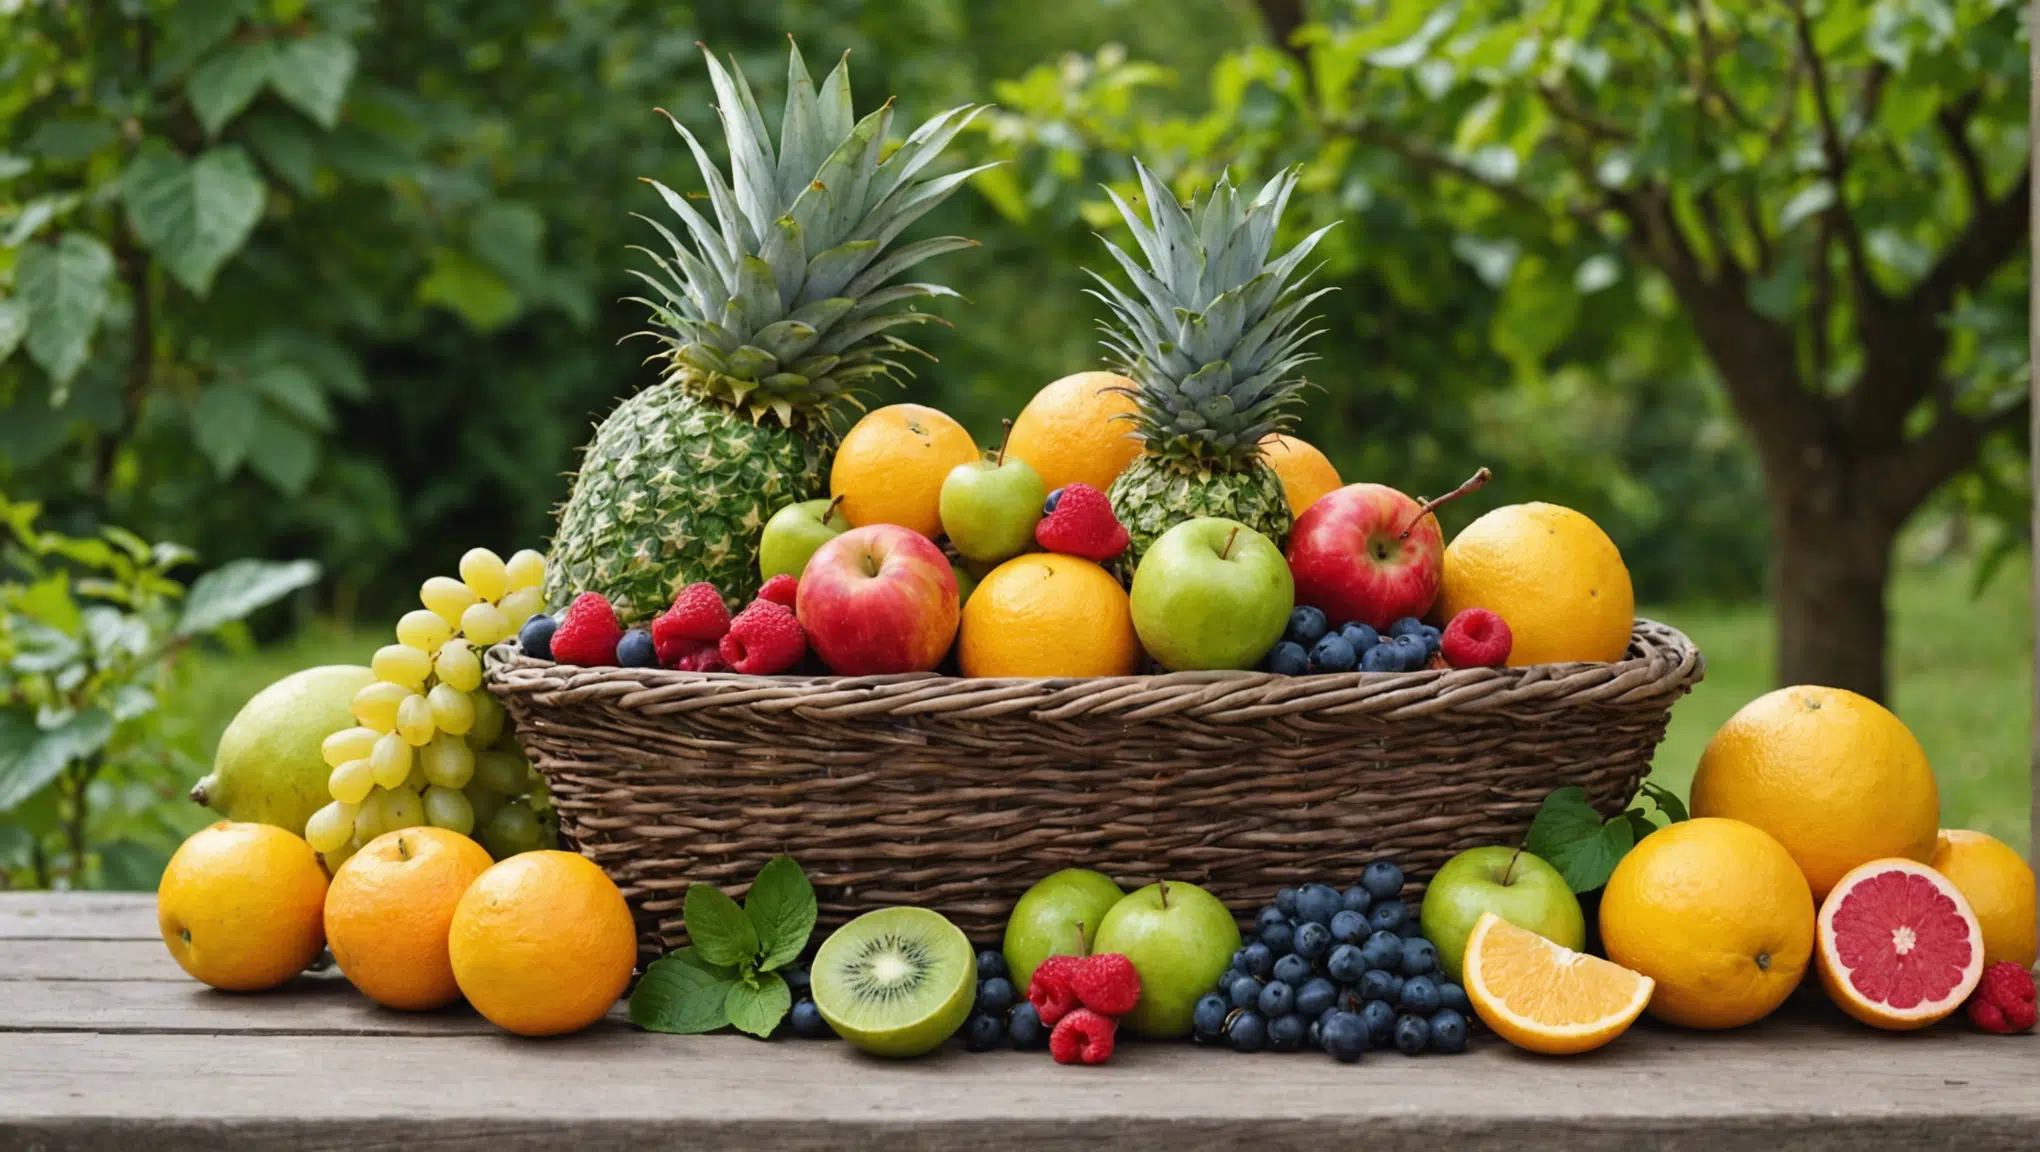 découvrez des astuces incroyables pour cultiver des fruits dans votre jardin et profiter d'une récolte abondante grâce à nos précieux conseils.